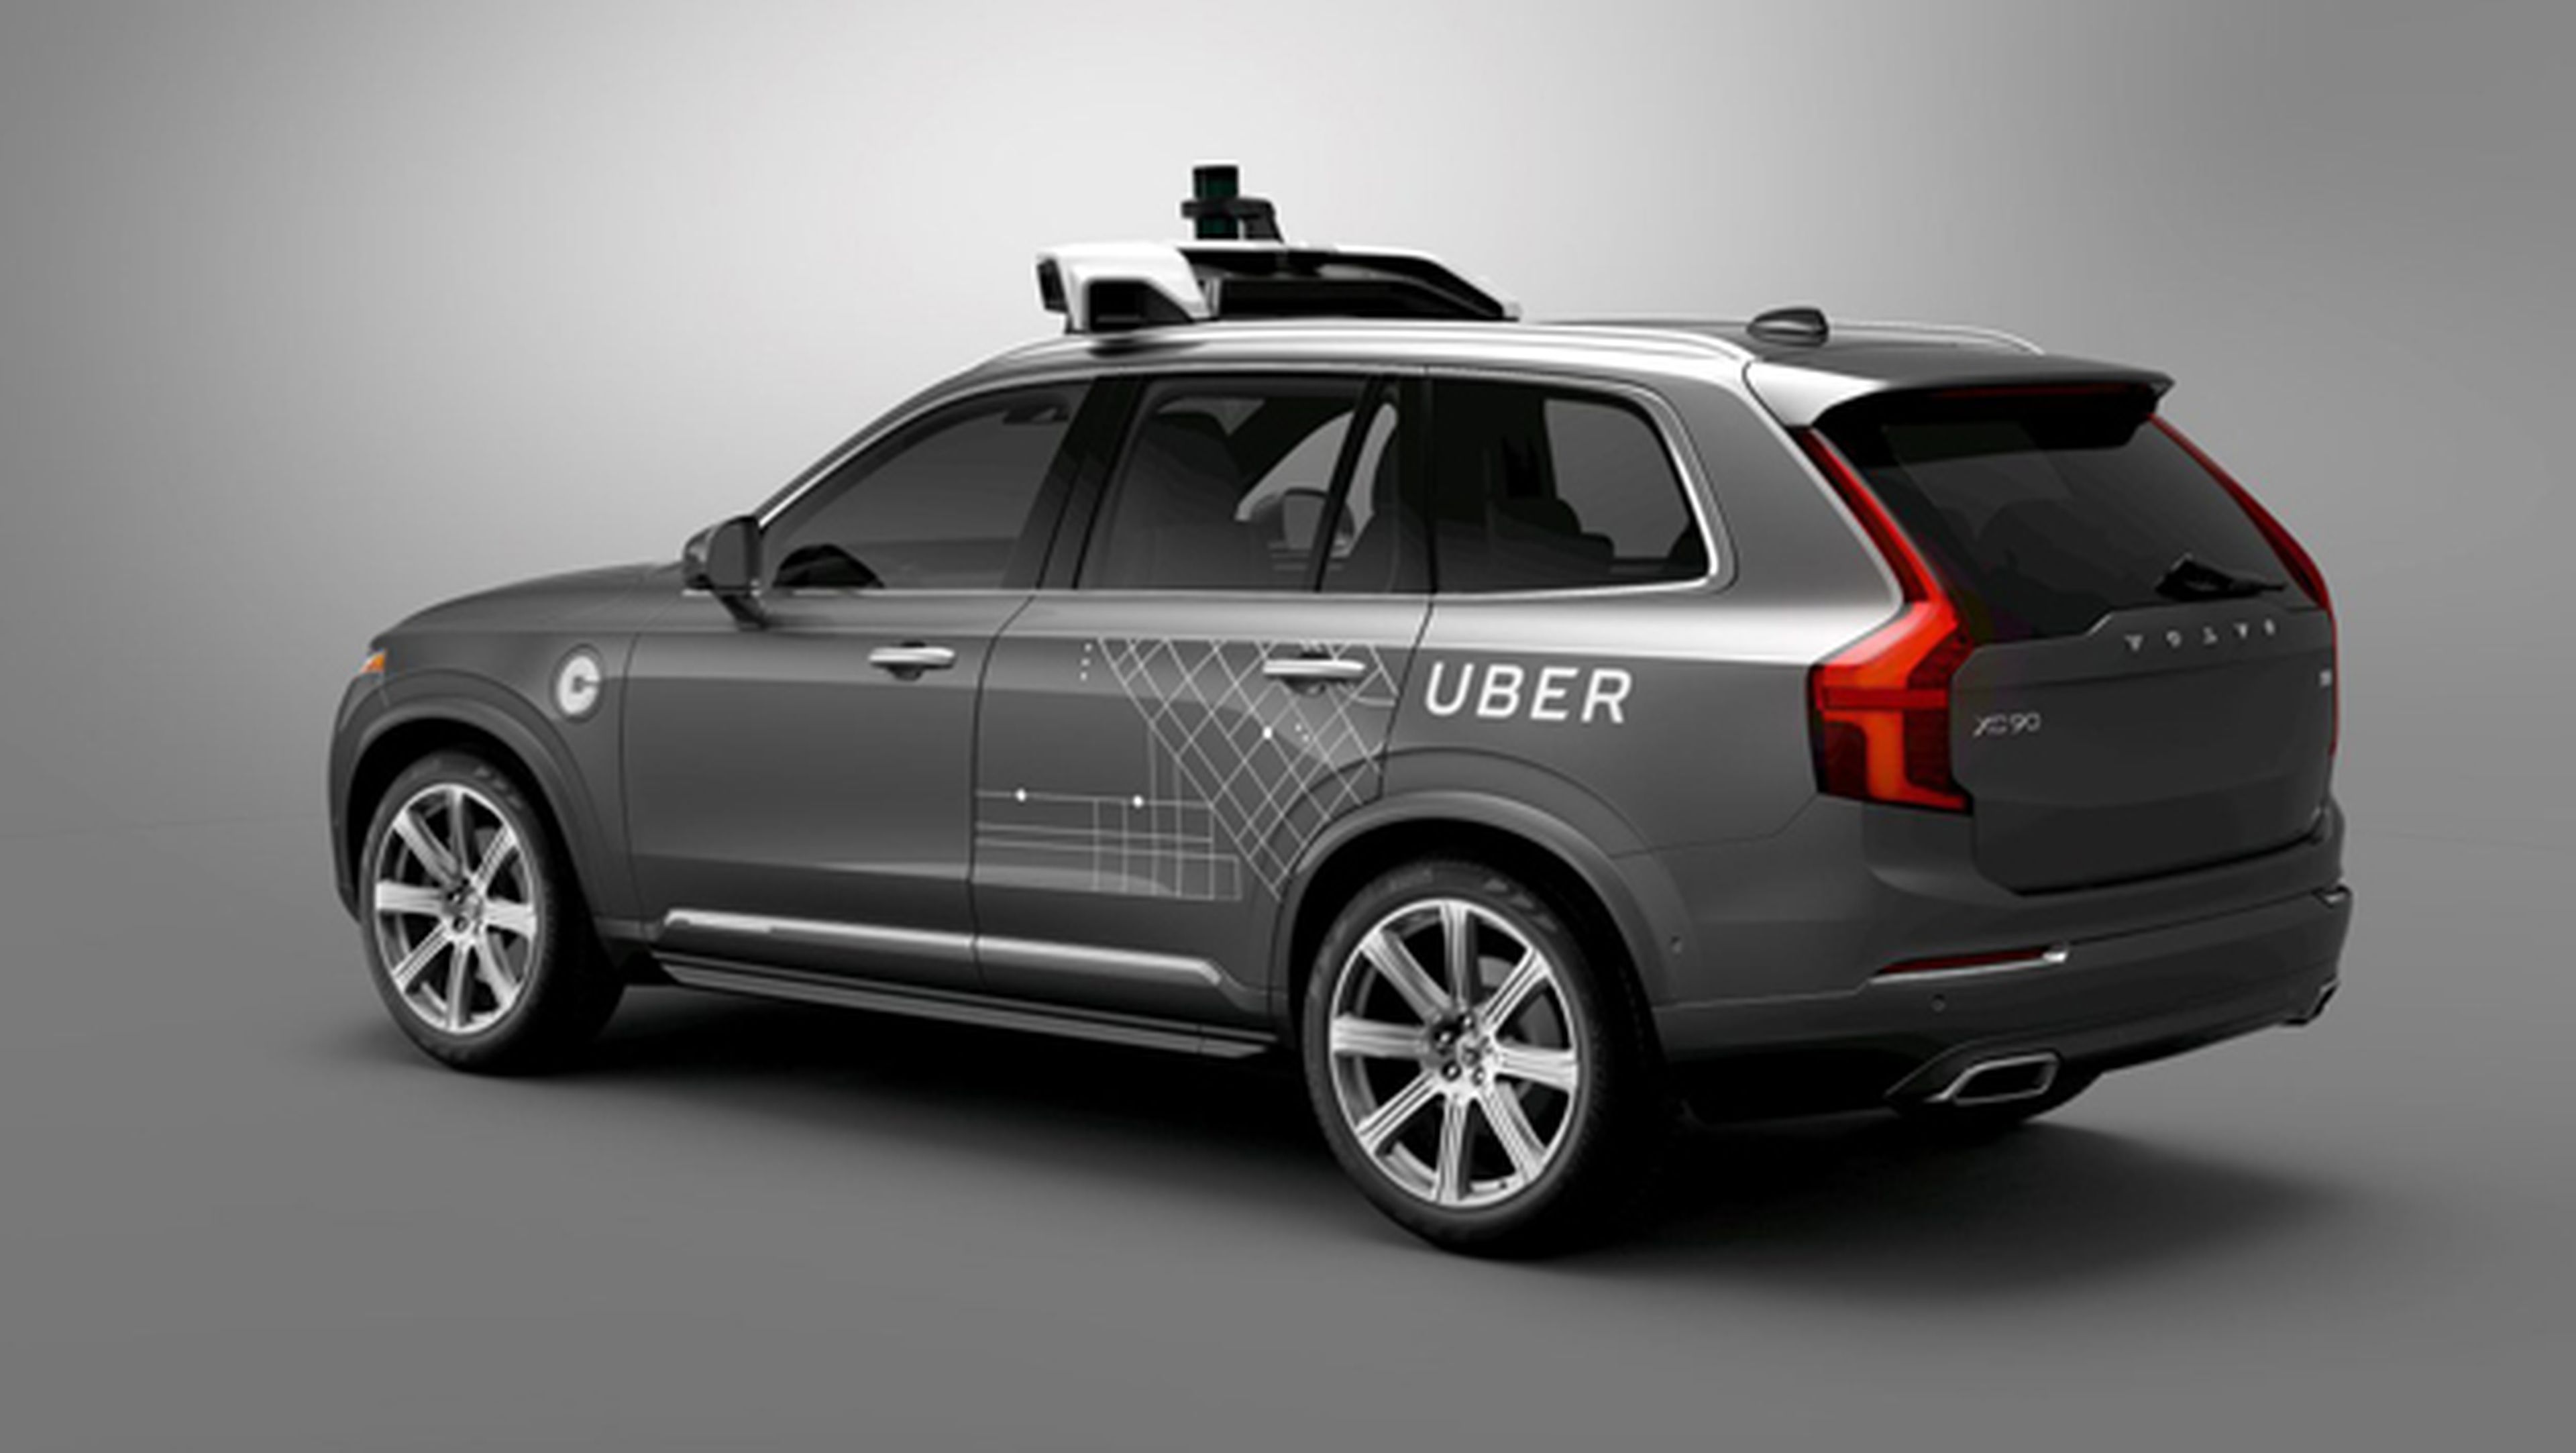 Uber encarga 24.000 coches autónomos a Volvo